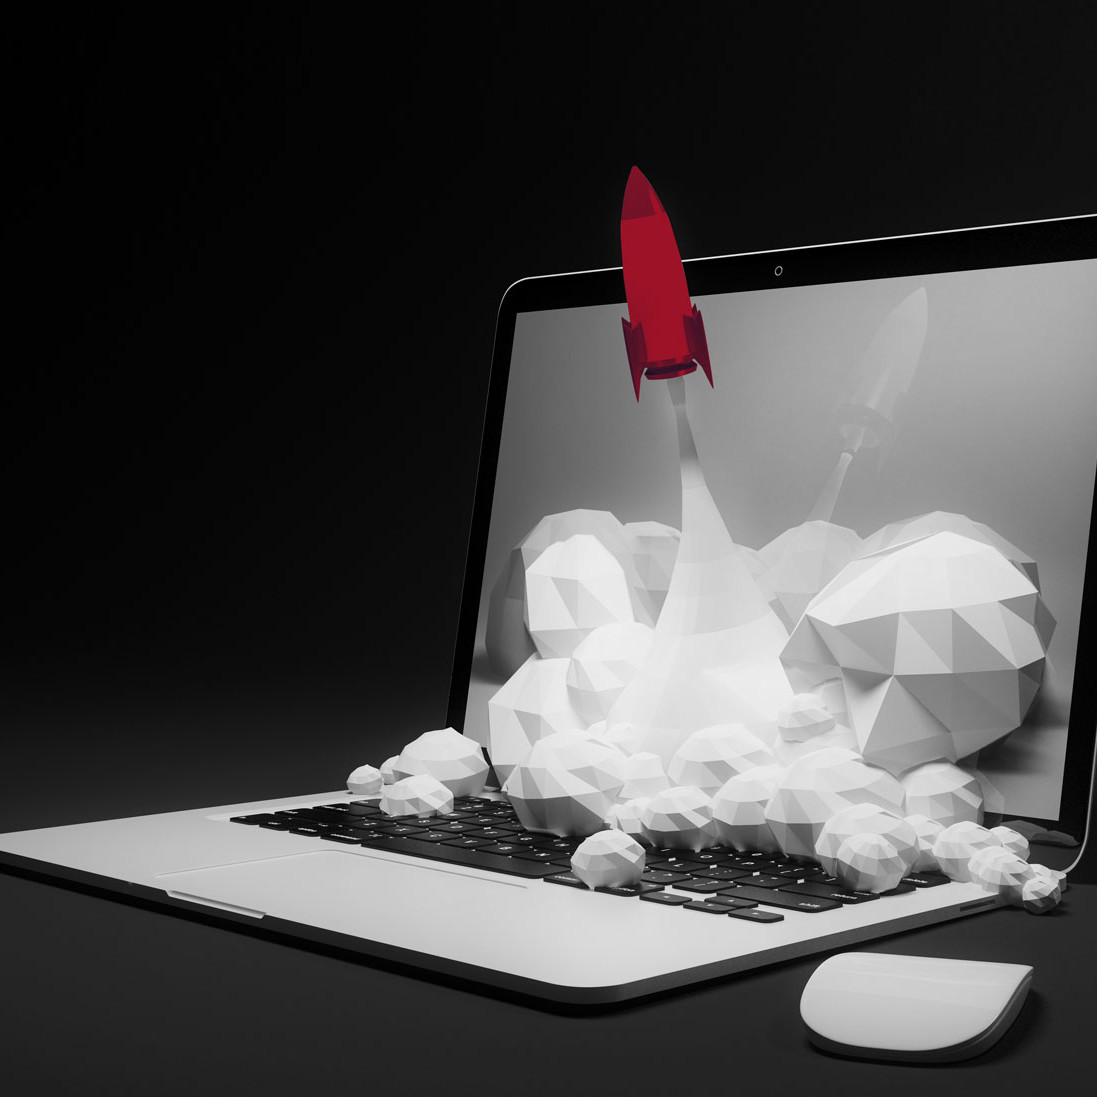 Eine rote Rakete startet aus dem Laptop als Symbolbild für das Potenzial von Markencoaching